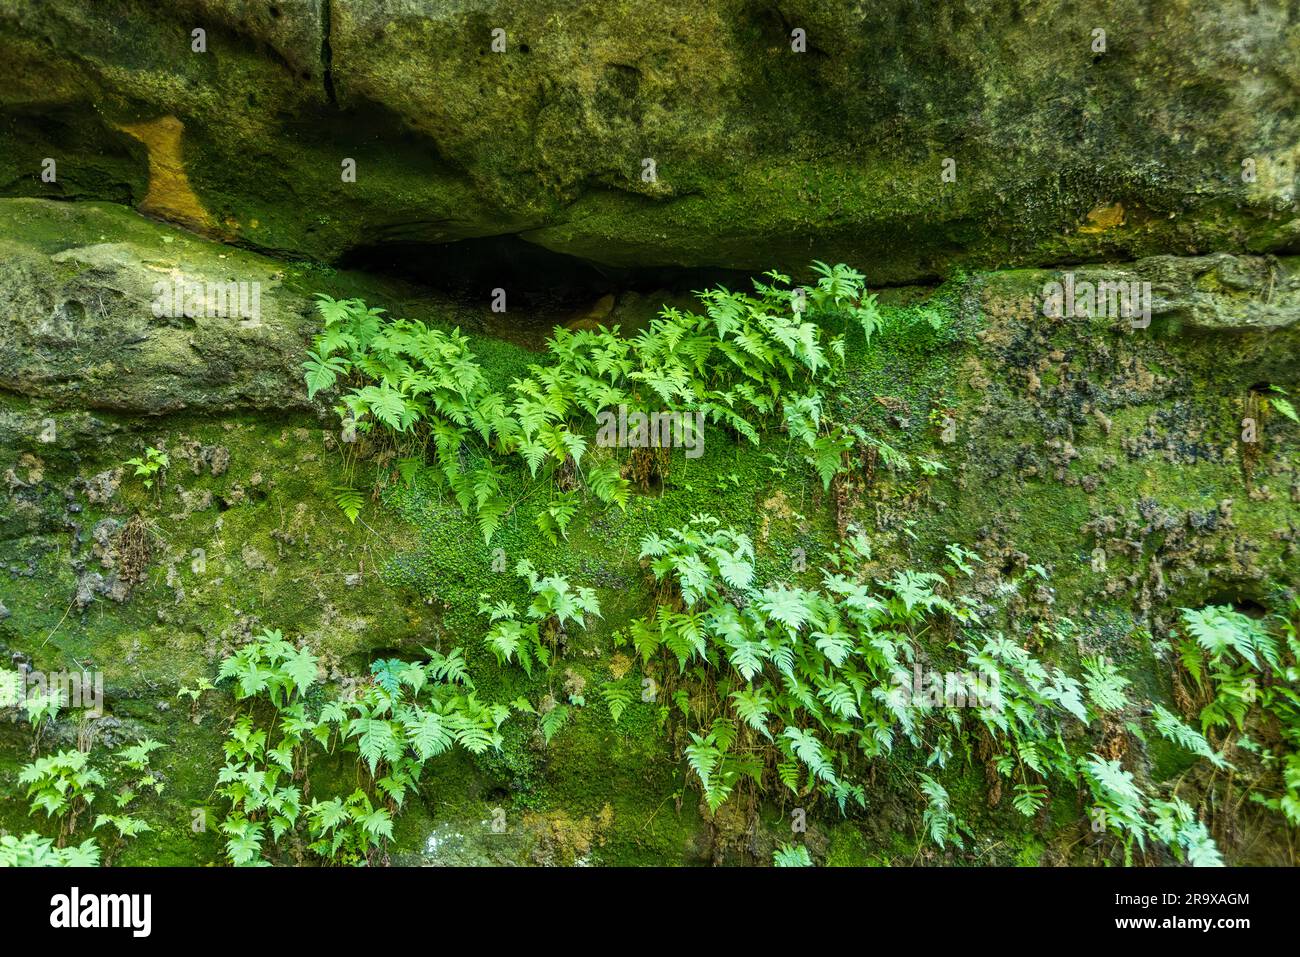 Farn und Moos auf einem Felsen. Die zerklüfteten Sandsteinblöcke sind typisch für die Sächsische Schweiz und die Nationalparkregion Sächsisch-Böhmische Schweiz. Malerweg durch die Sächsische Schweiz. Lohmen/Stadt Wehlen, Deutschland Stockfoto